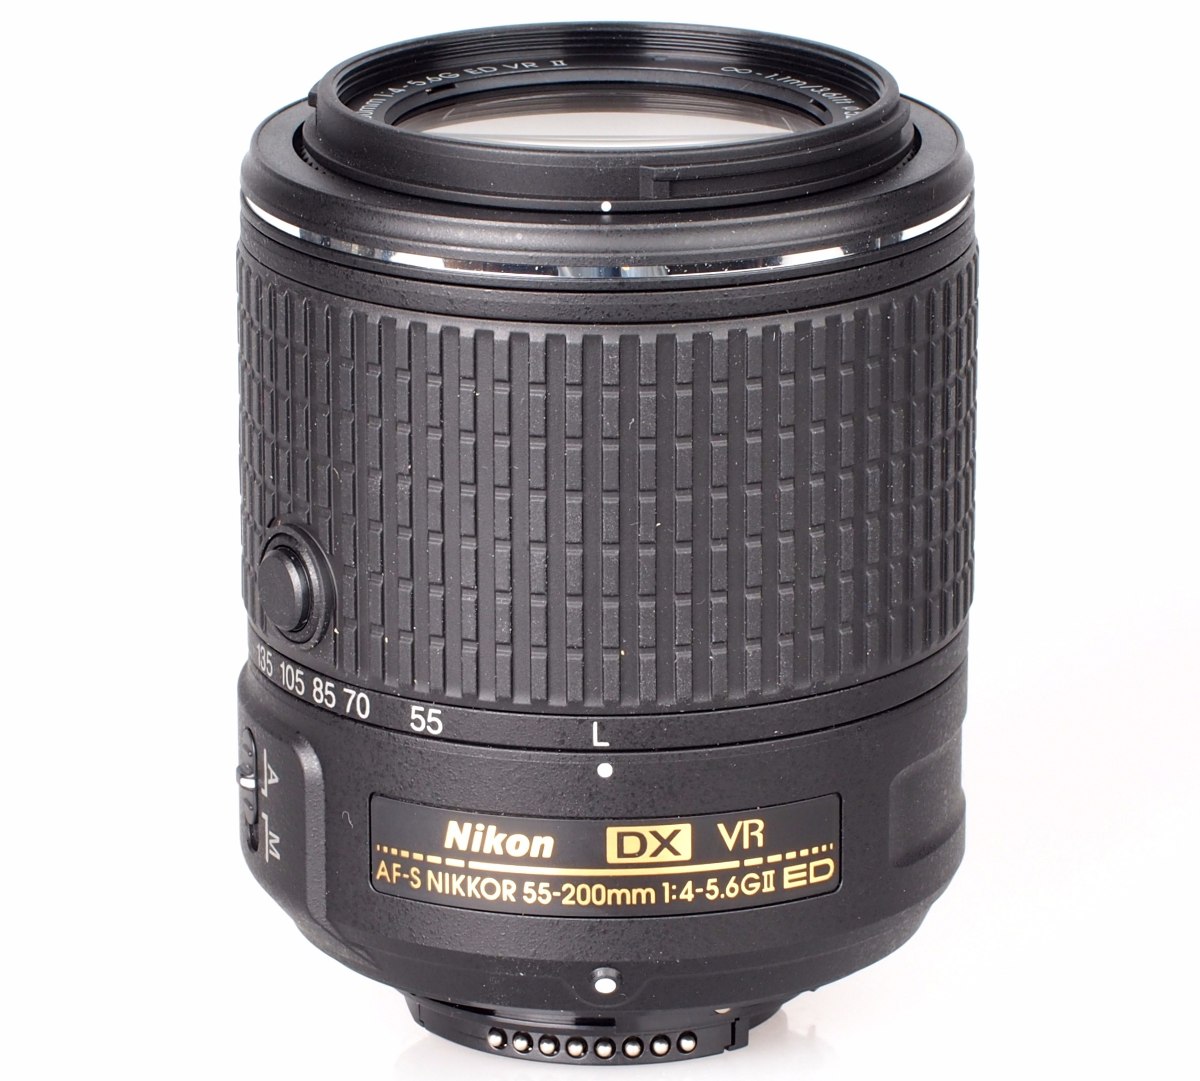 Nova Lente Nikon Af-s Dx Nikkor 55-200mm F/4-5.6g Ed Vr Ii - R$ 678,90